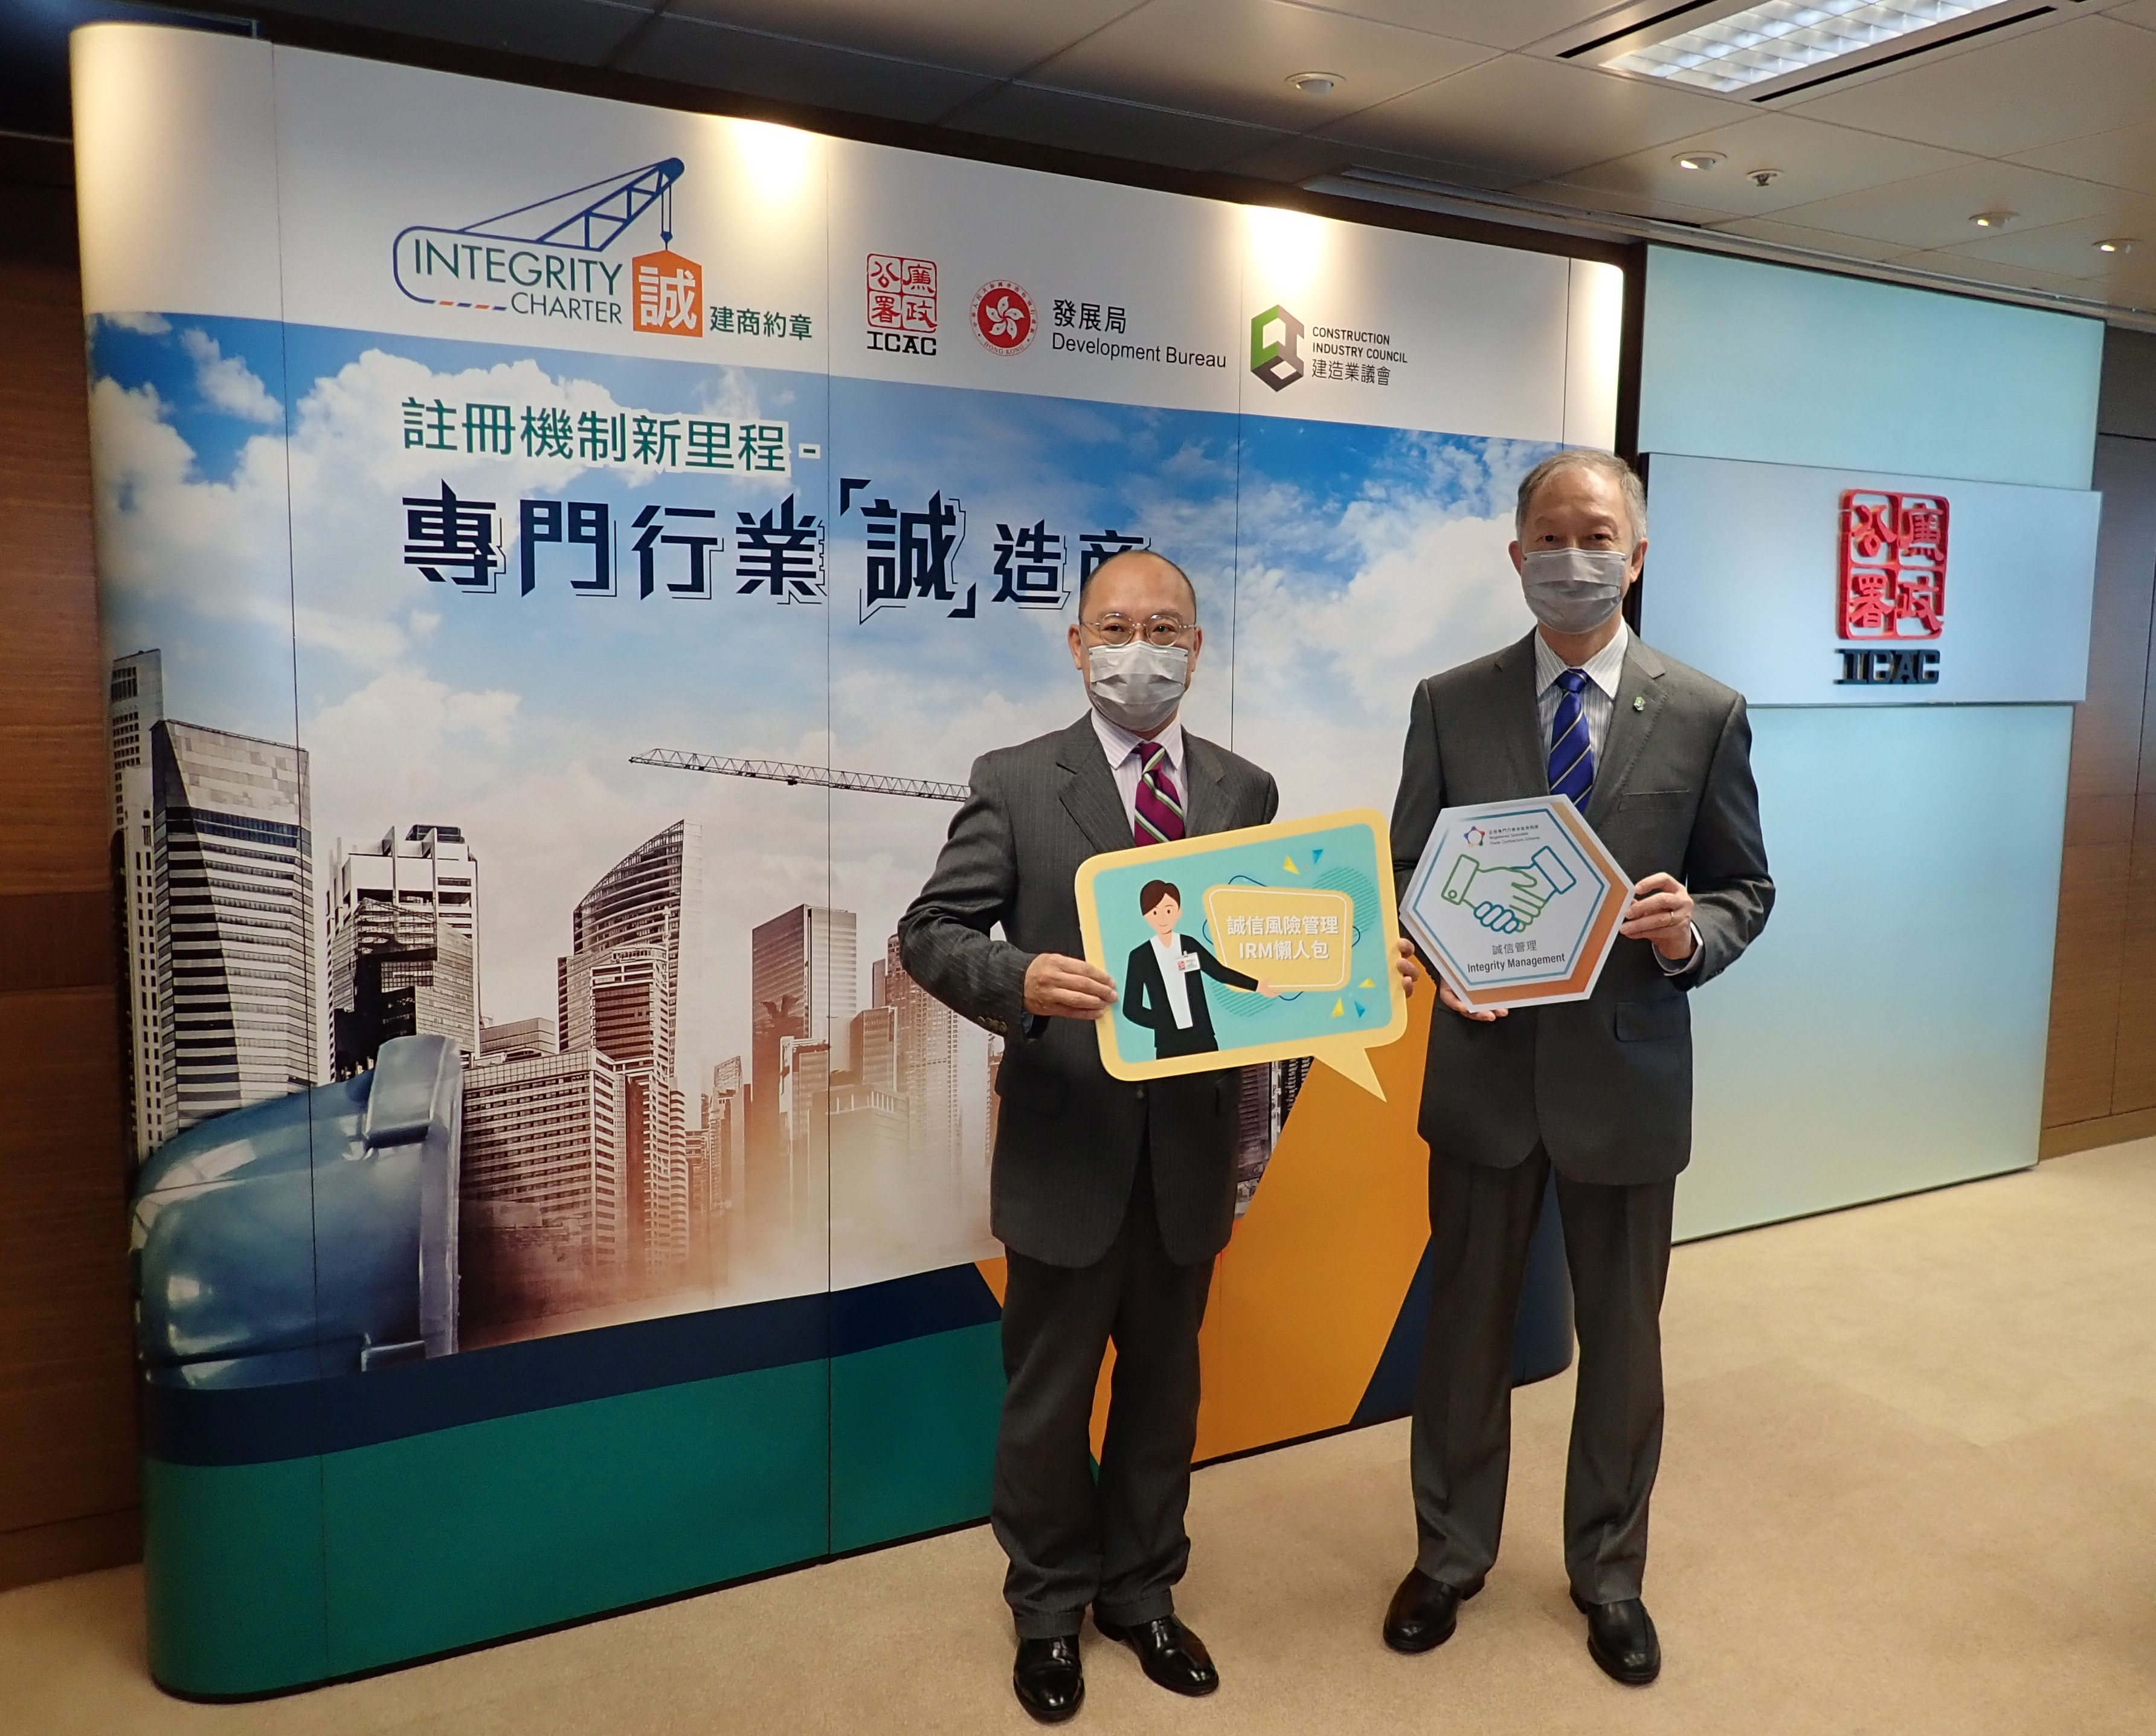 註冊機制新里程 – 同為香港建造業開展「誠信」新篇章